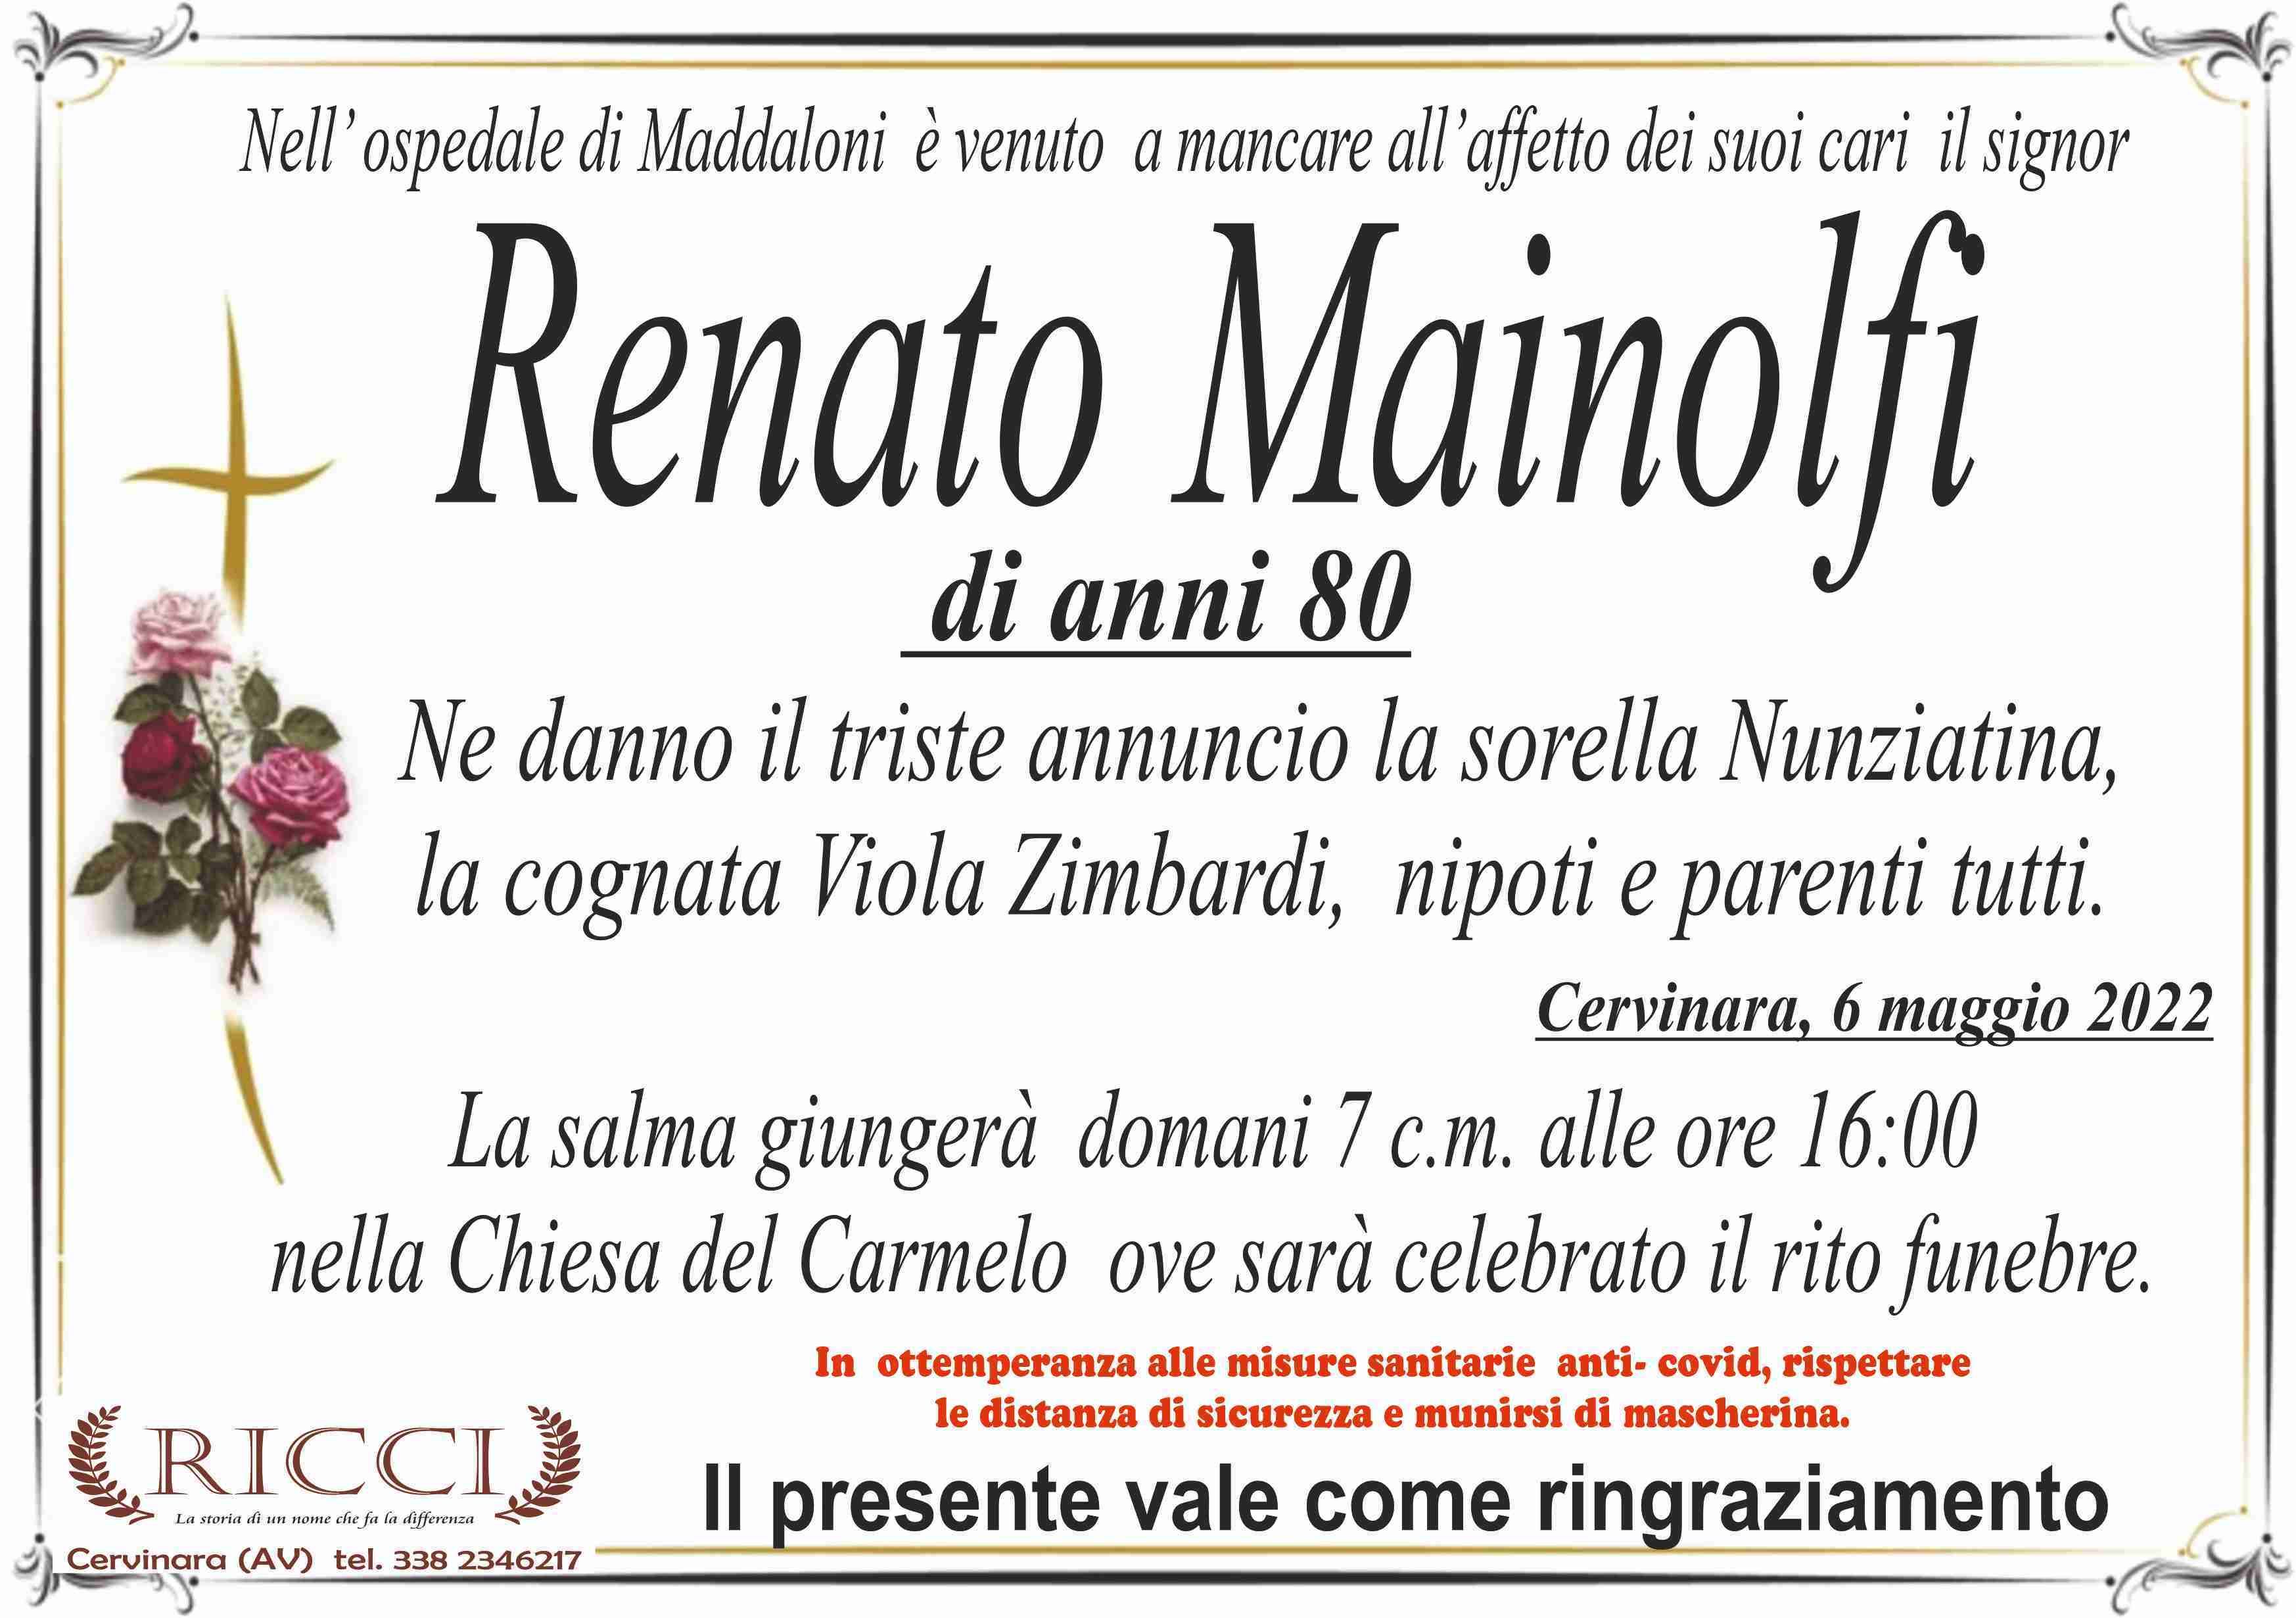 Renato Mainolfi